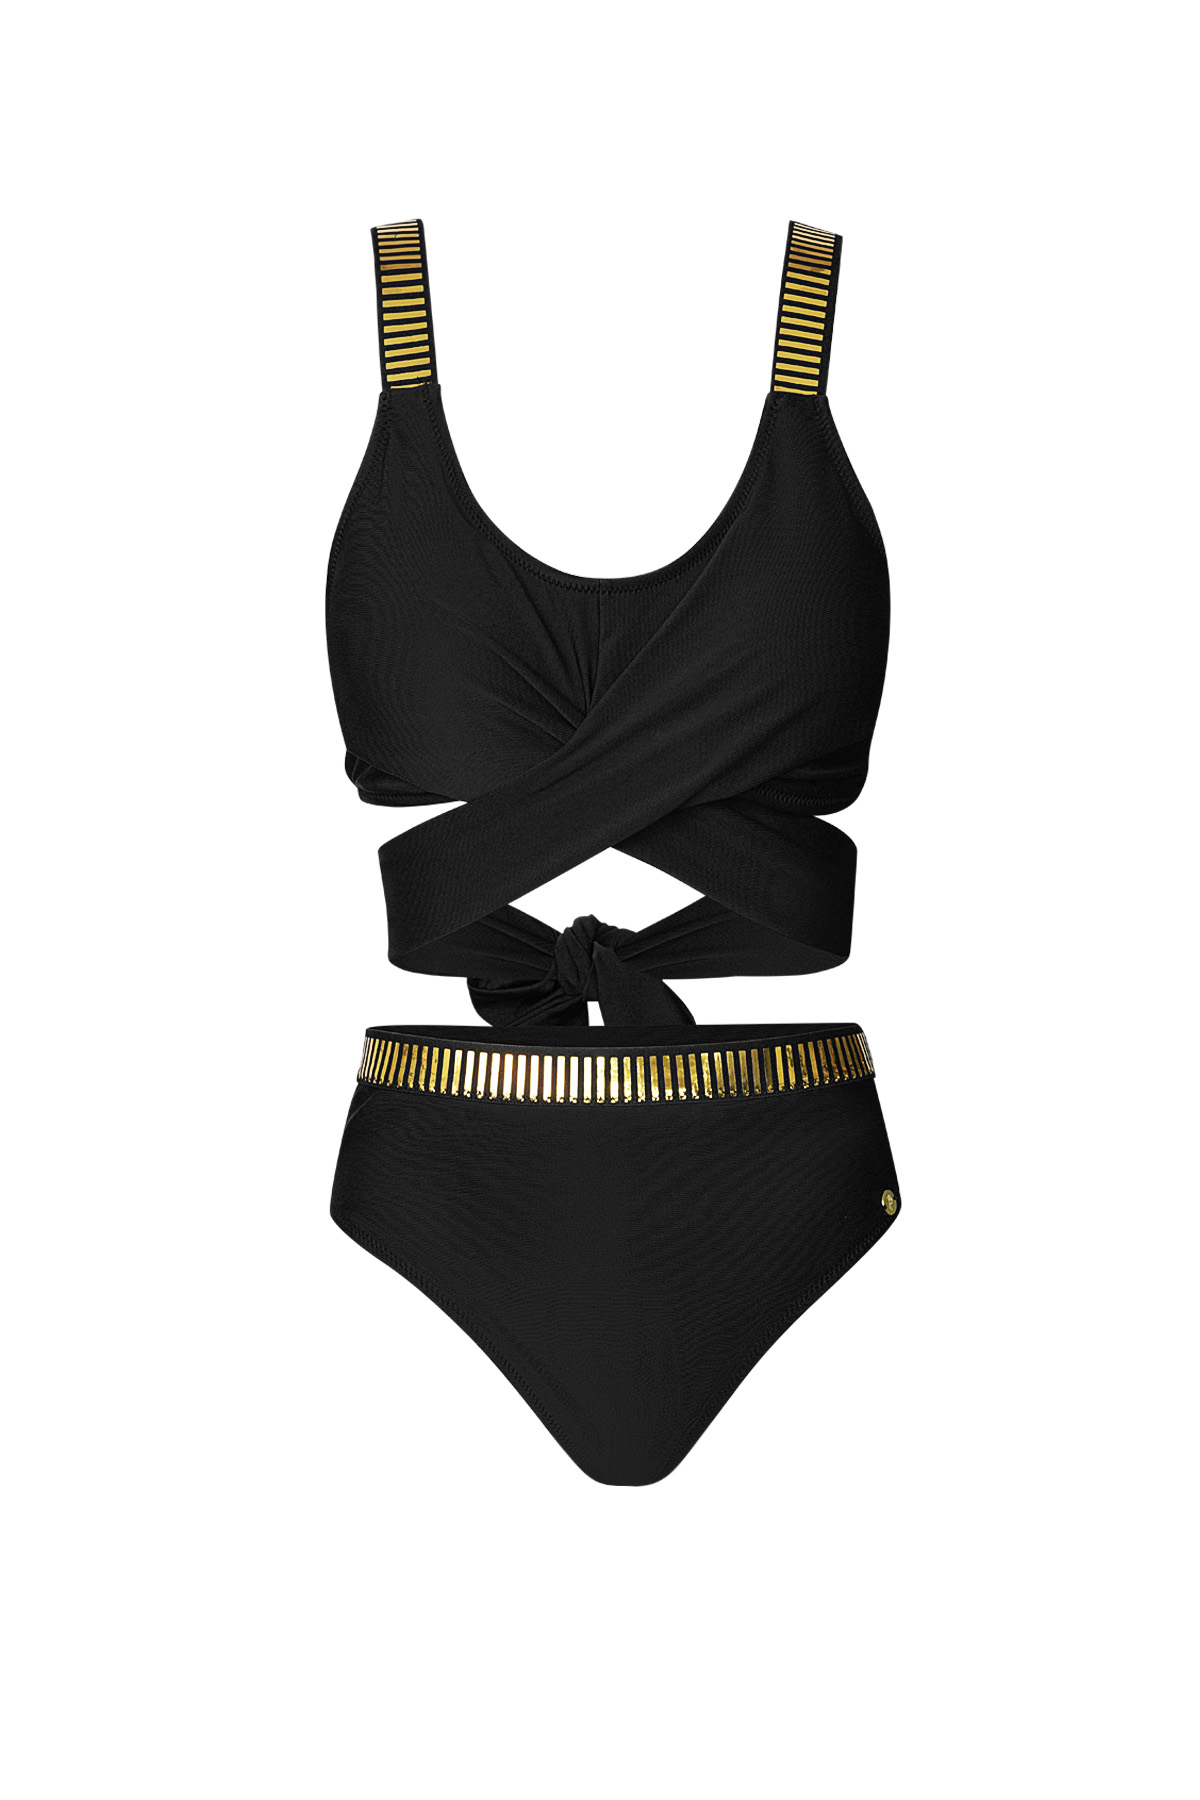 Button bikini gold stripes - black L 